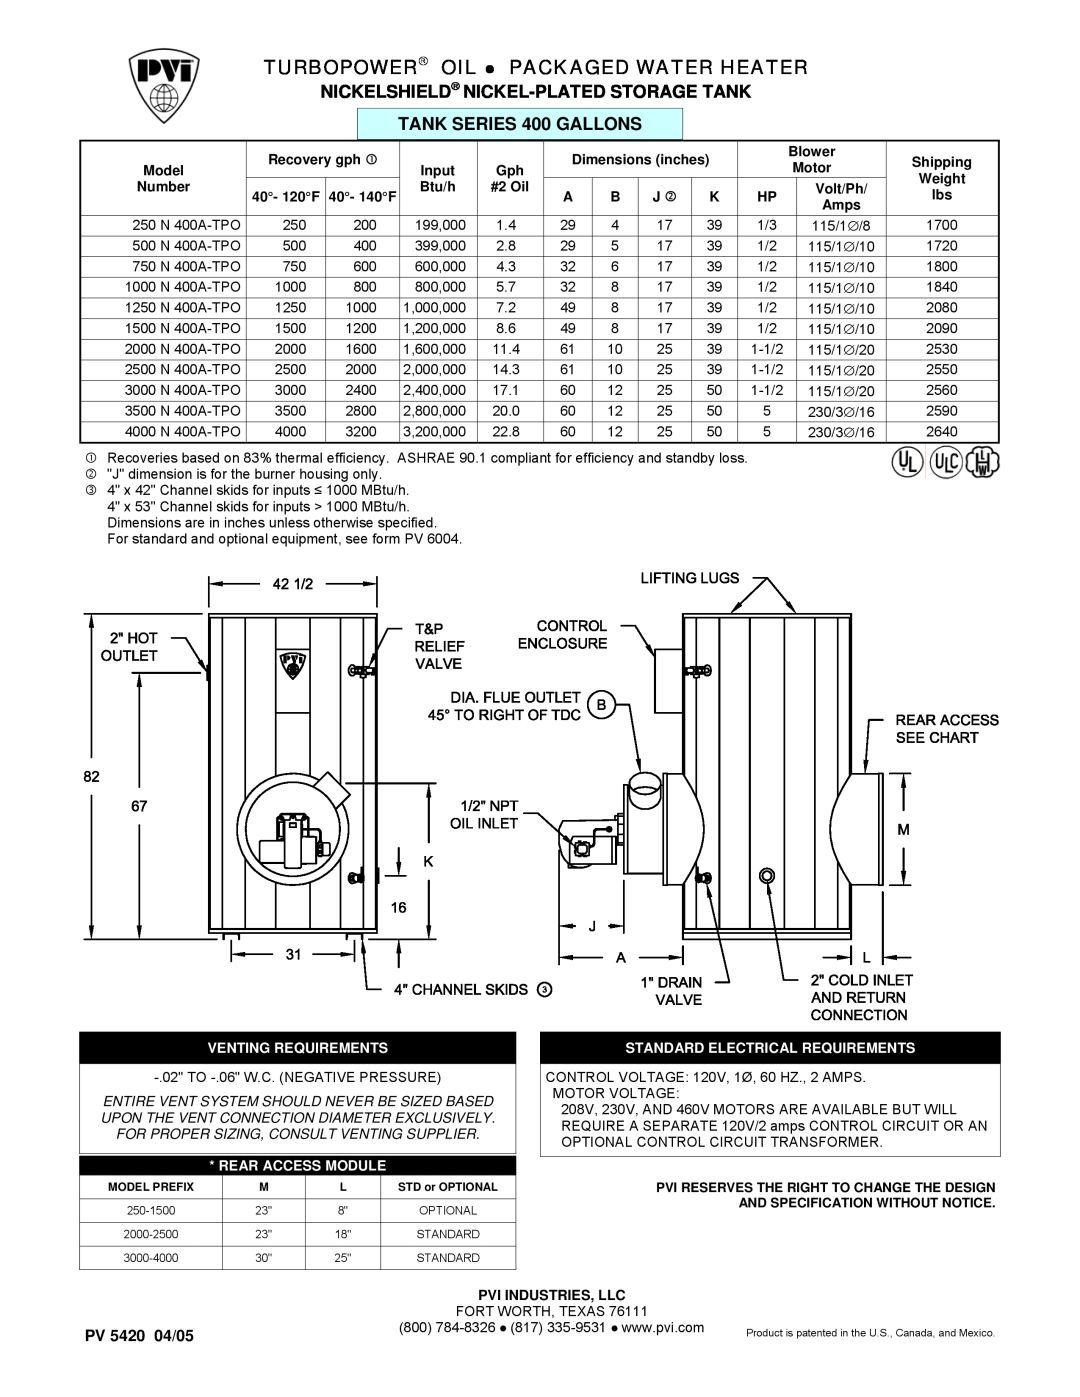 PVI Industries 2000N400A-TPO dimensions Turbopower Oil, Packaged Water Heater, Nickelshield Nickel-Platedstorage Tank 